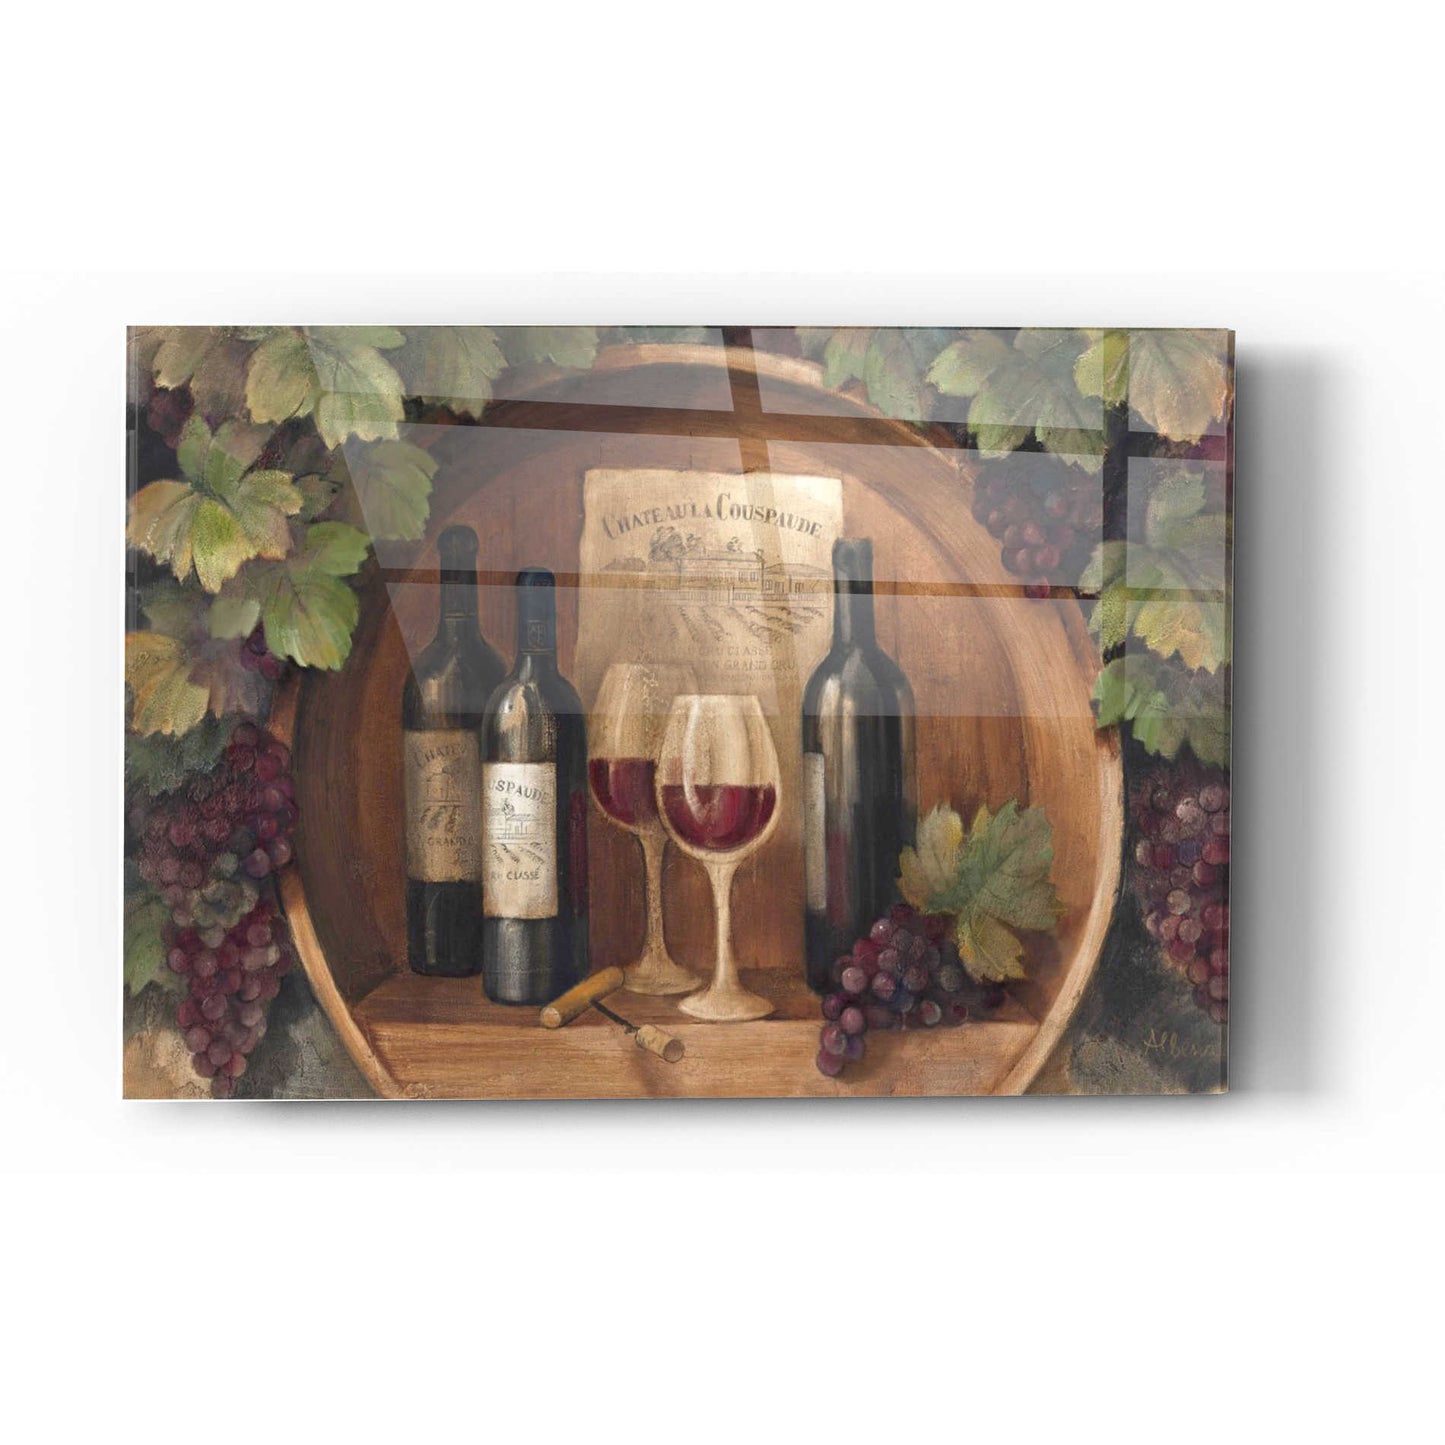 Epic Art 'At the Winery' by Albena Hristova, Acrylic Glass Wall Art,24x36